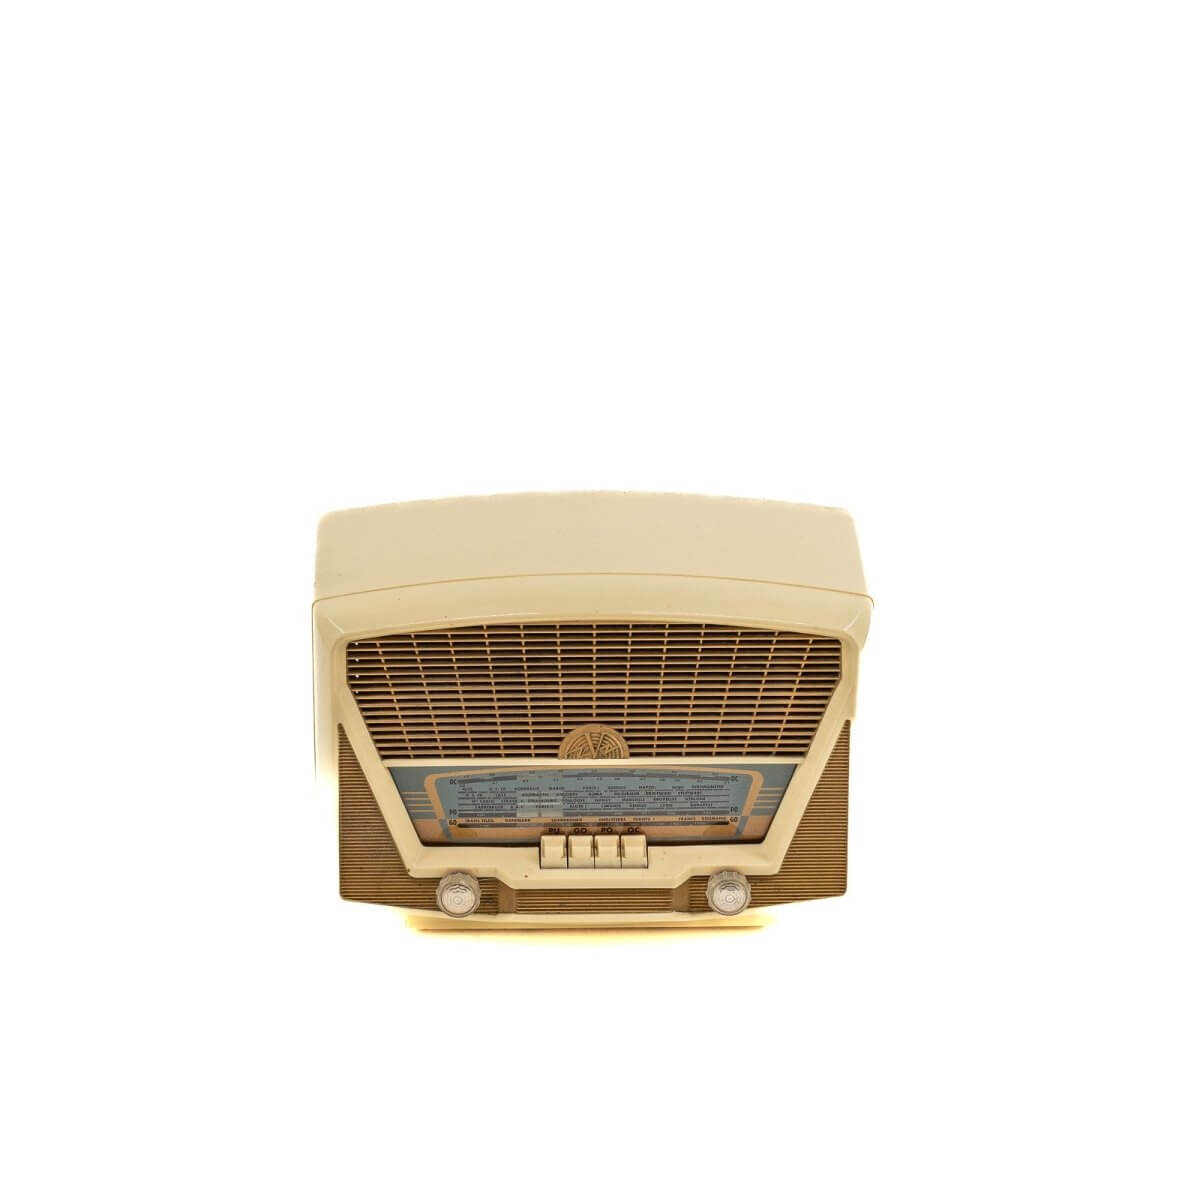 Radio Bluetooth Victoire Vintage 50’S enceinte connectée française haut de gamme absolument prodige radio vintage